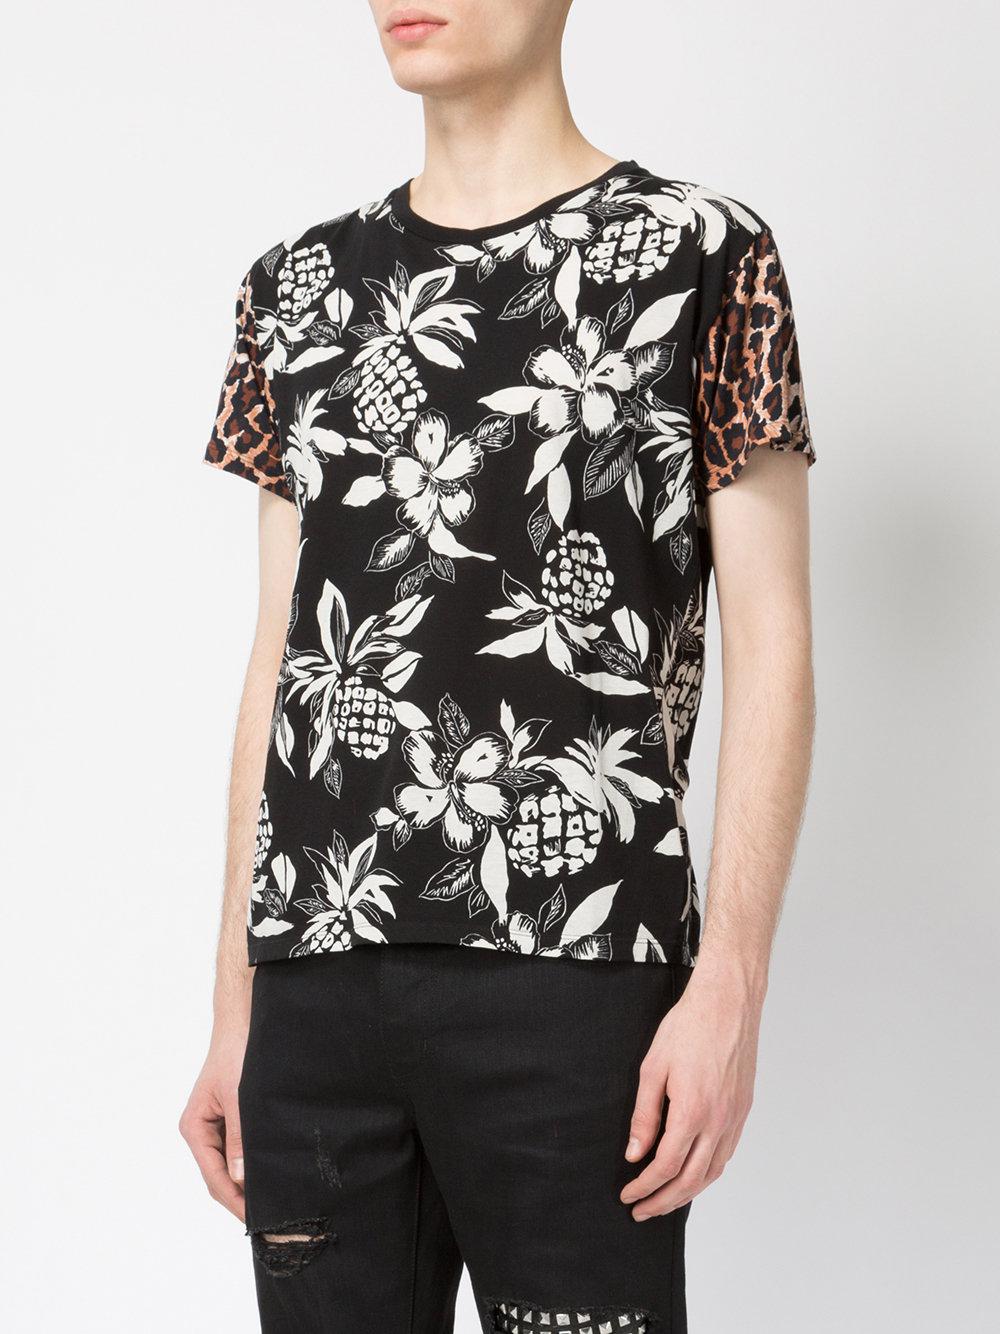 Saint Laurent Pineapple Print T-shirt in Black for Men - Lyst